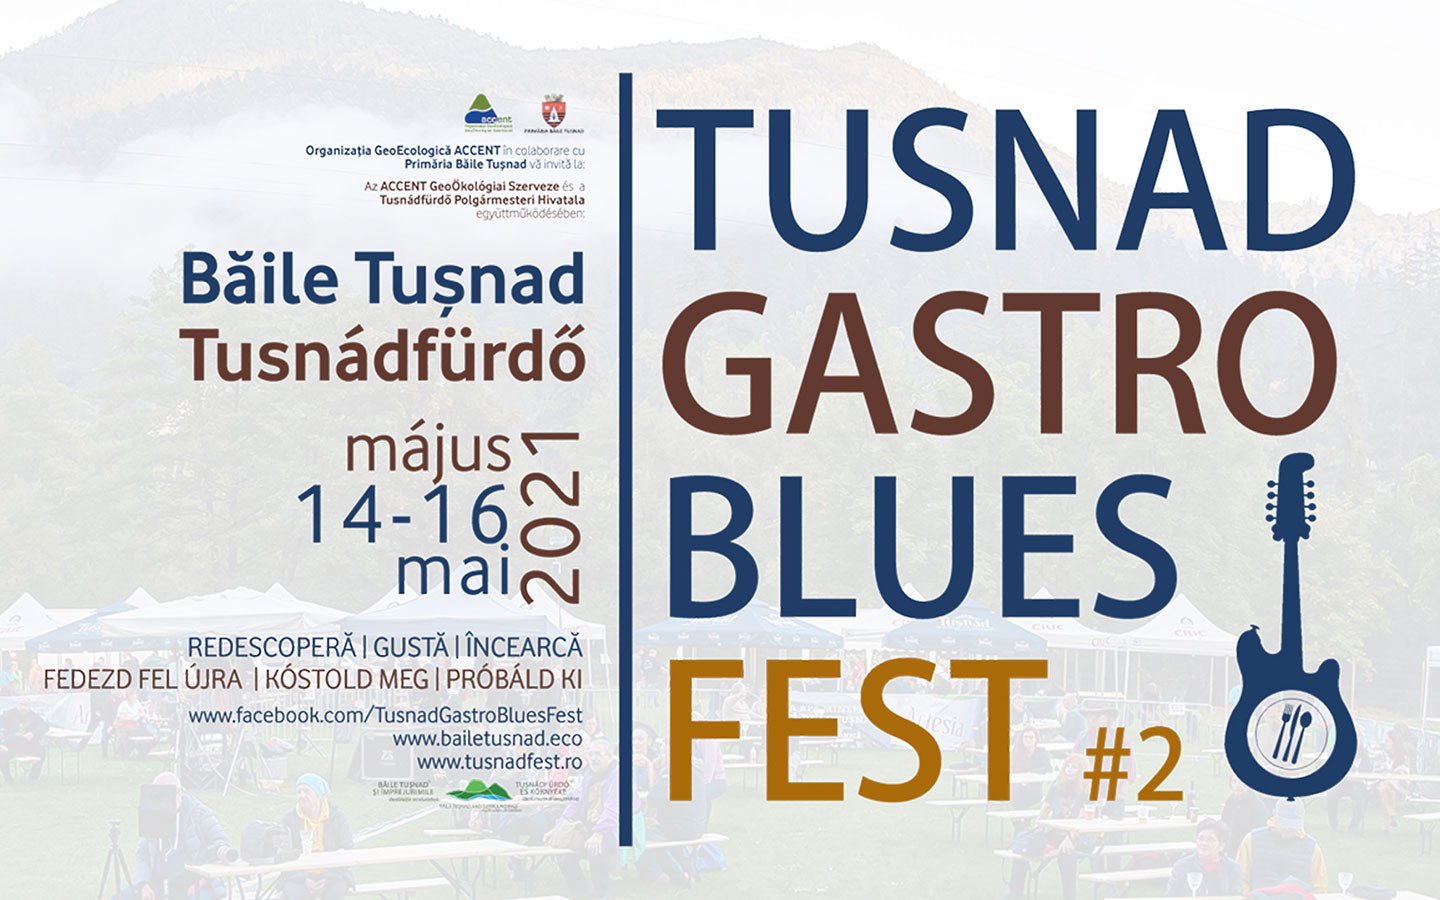 Tusnad Gastro Blues Fest: Új időpontban jelentkezik a fesztivál